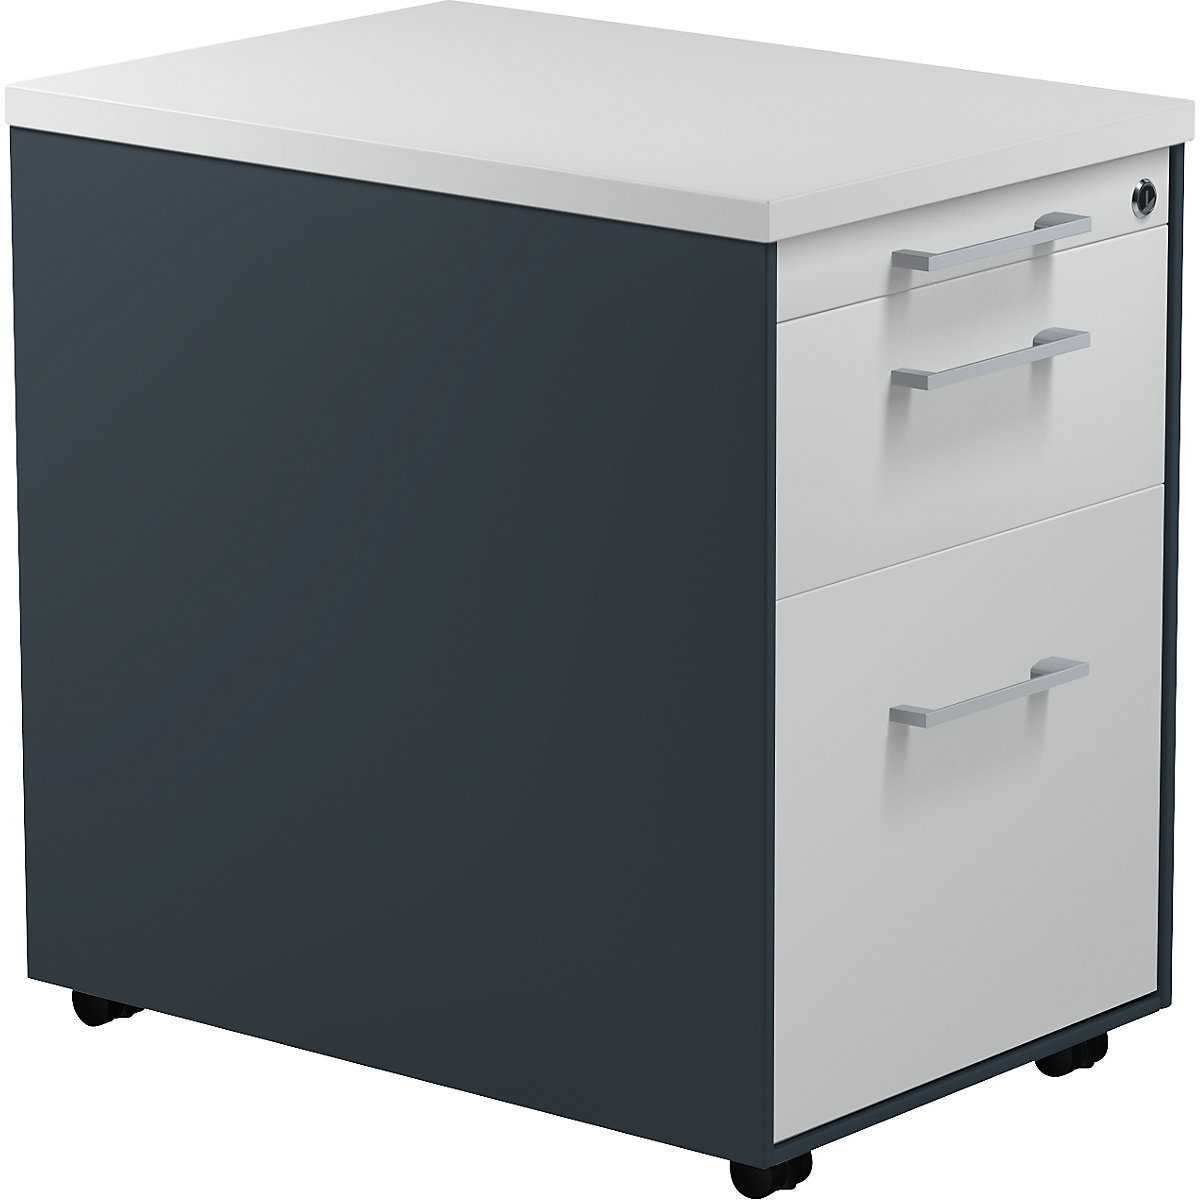 Pojízdný kontejner – mauser, v x h 579 x 600 mm, 1 zásuvka na materiál, 1 kartotéka pro závěsné složky, antracitová šedá / světlá šedá / světlá šedá-4